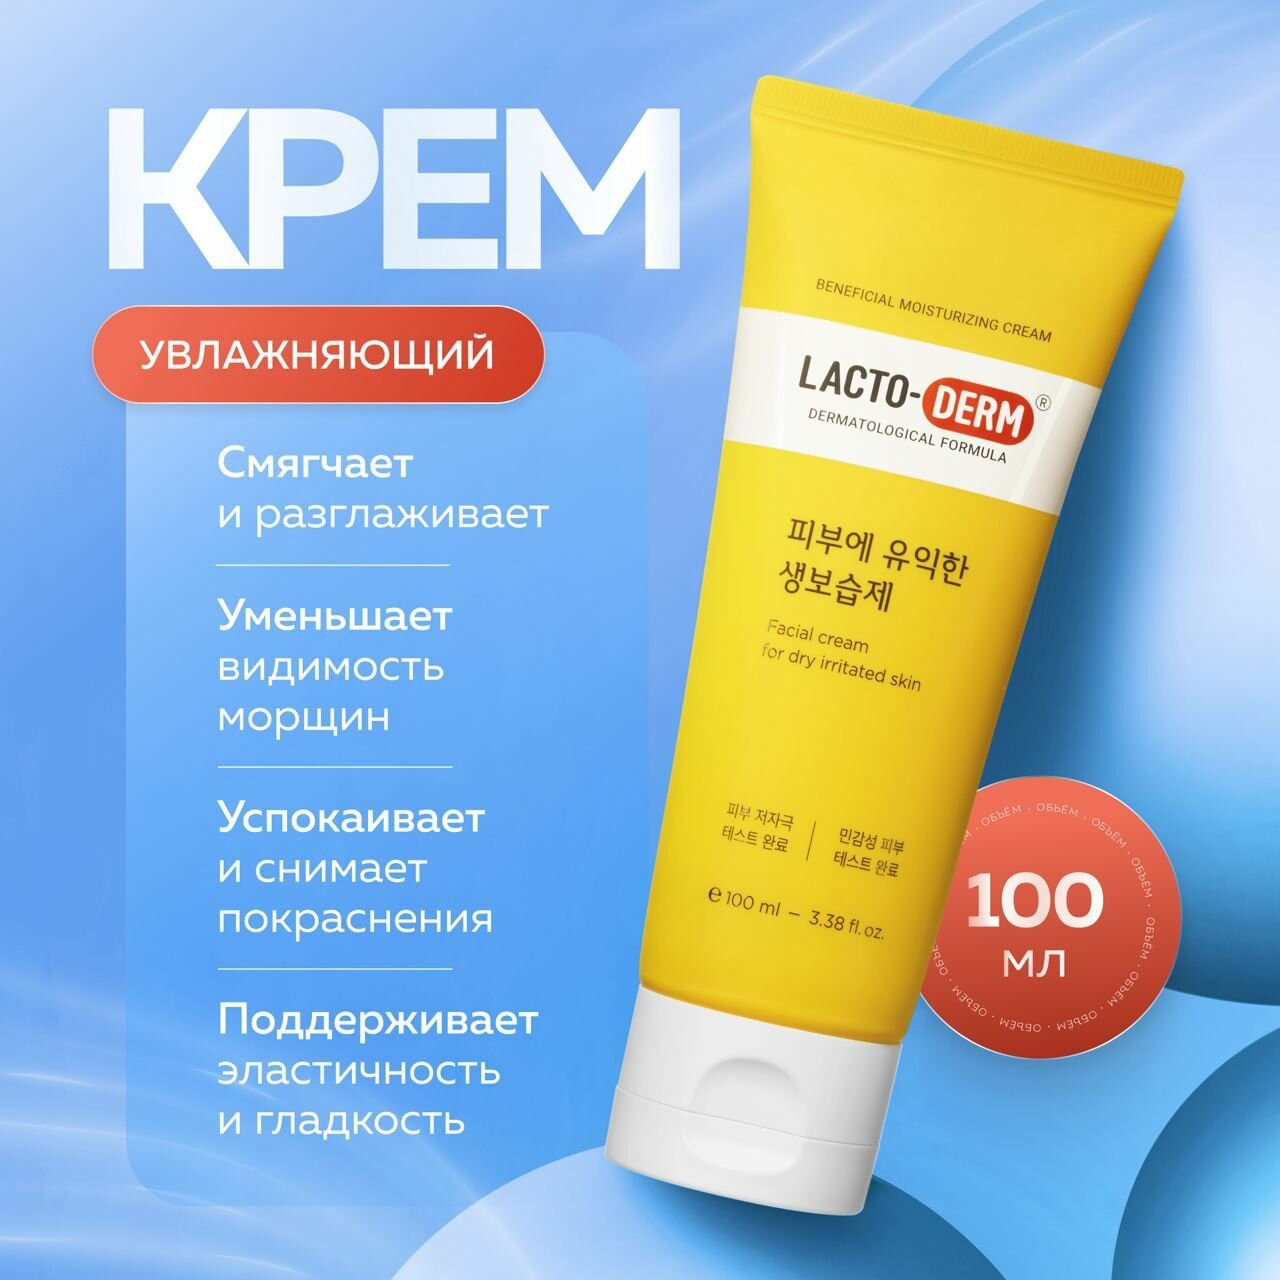 CKD Увлажняющий крем для всей семьи с пробиотиками LACTODERM Beneficial Moisturizing Cream Jumbo 100 мл.